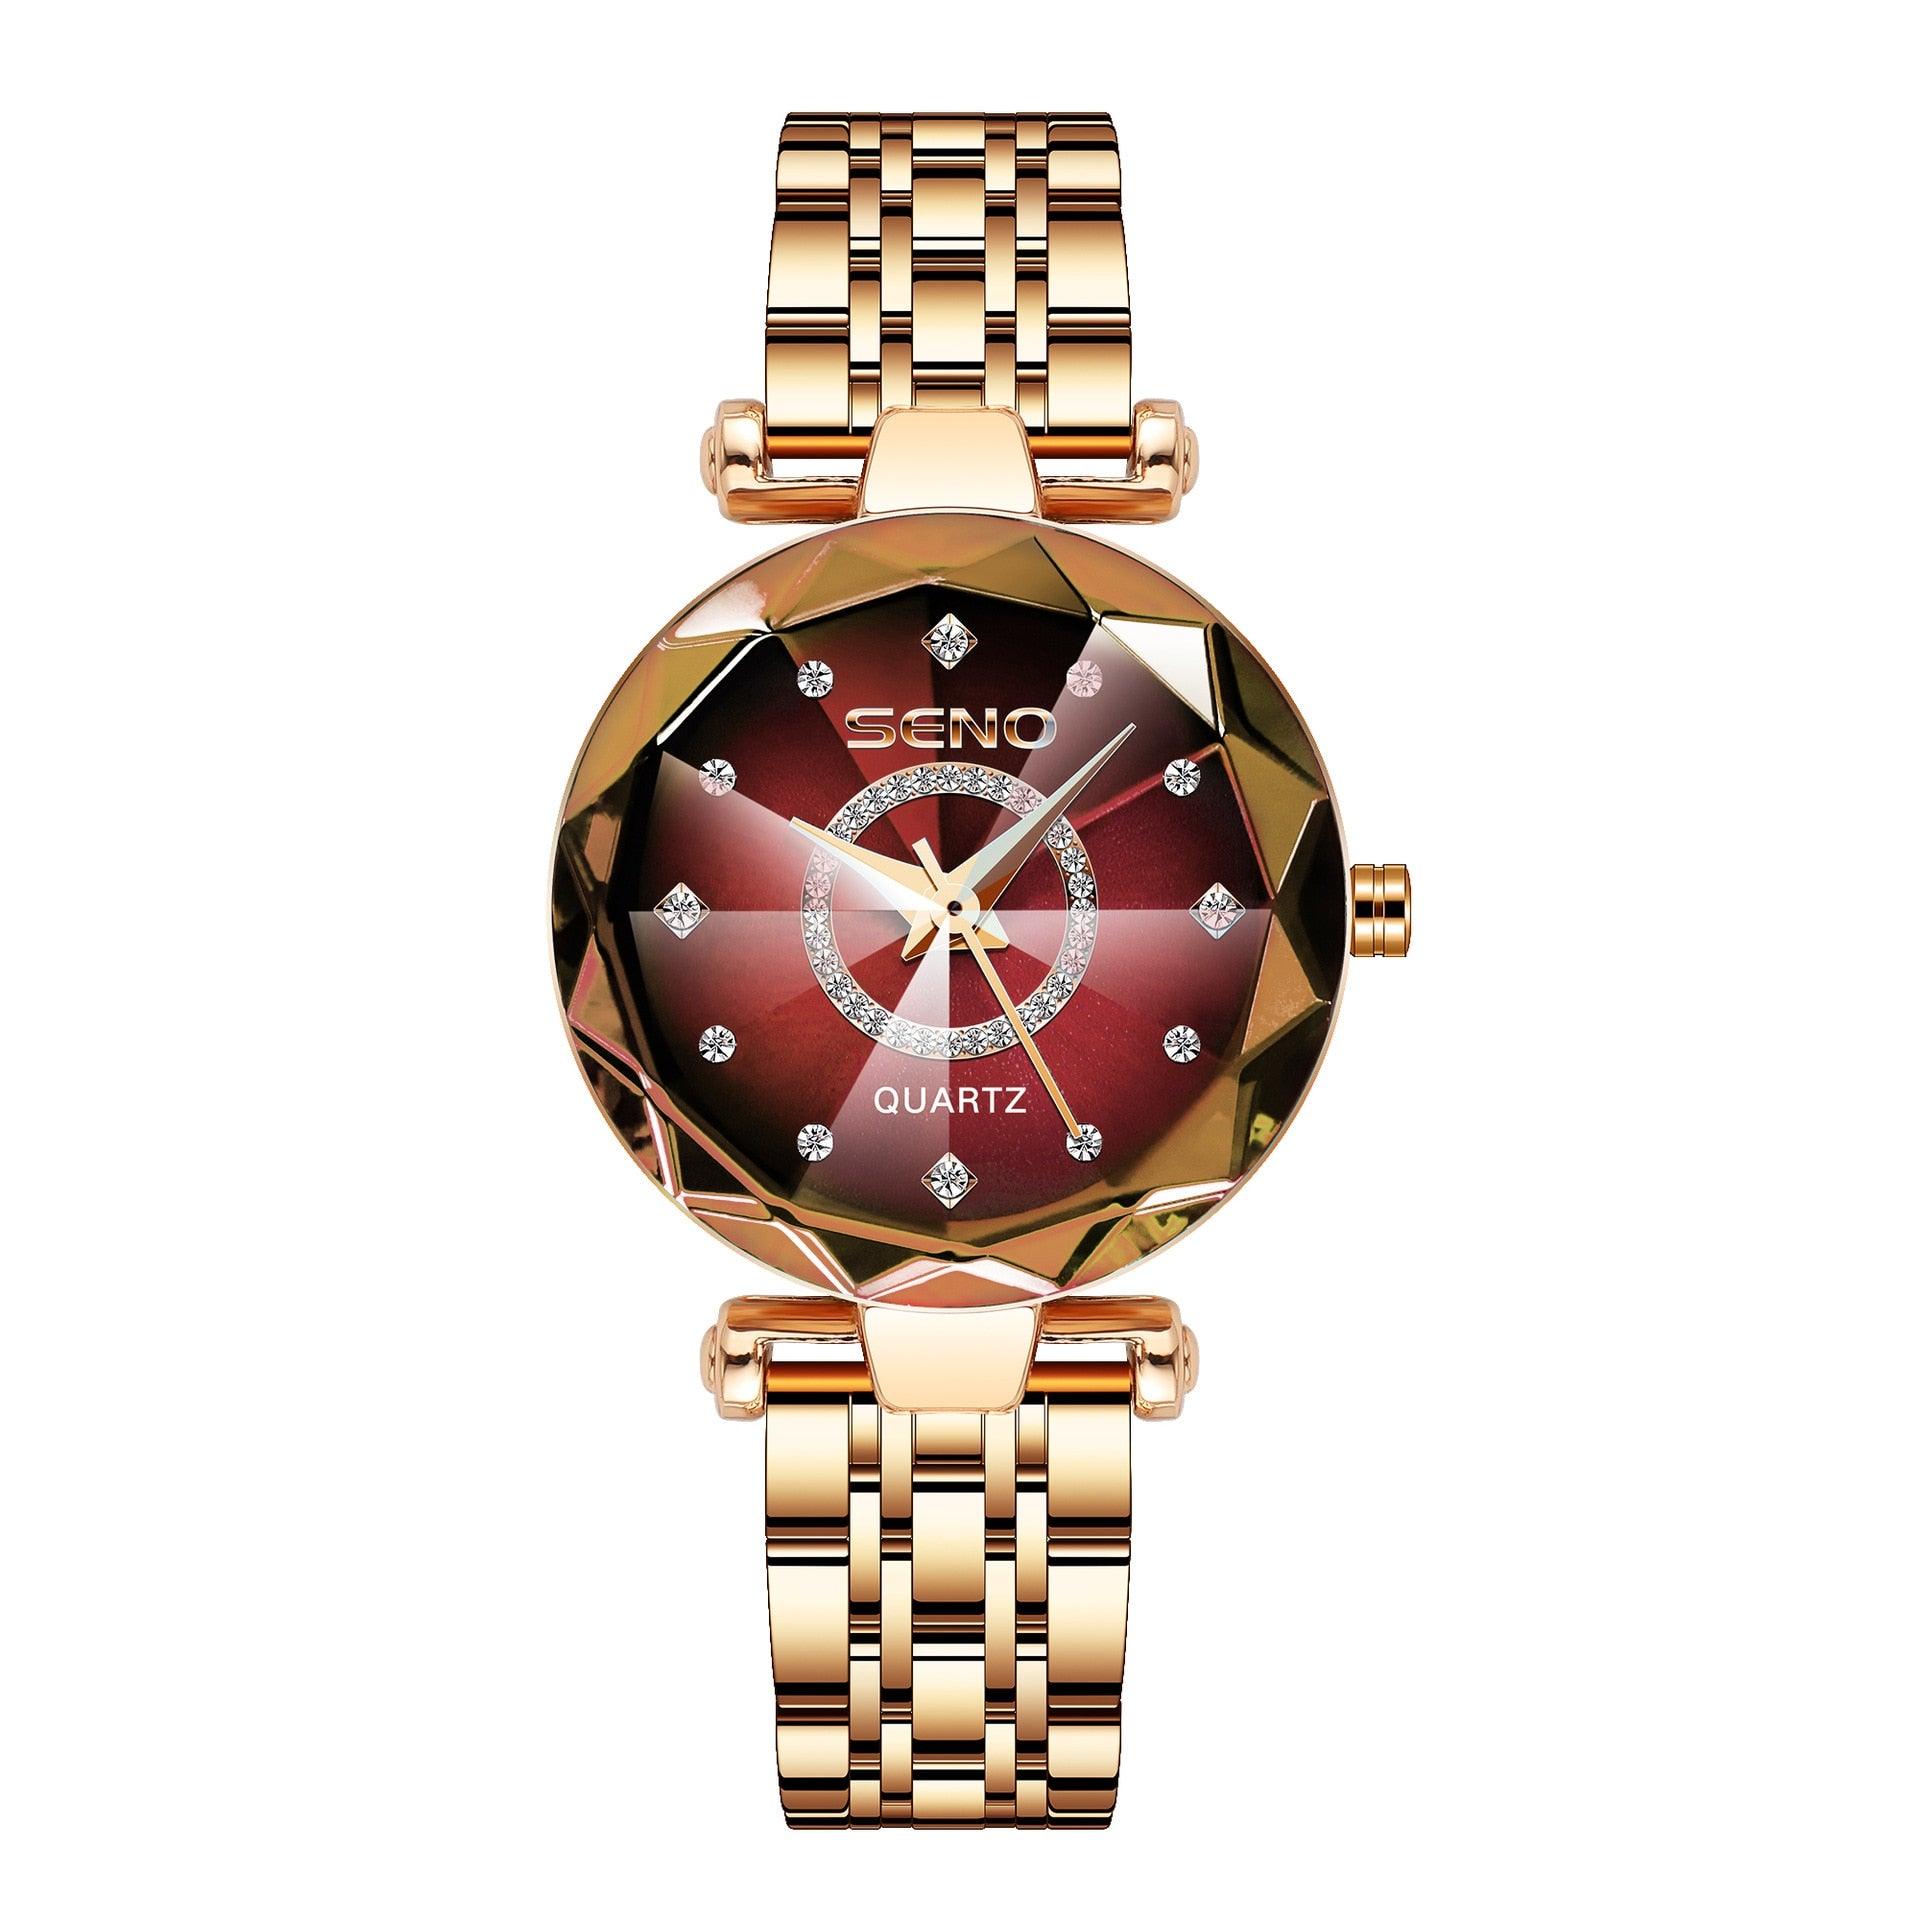 Relógio Digital Smartwatch Dourado Elegante + Pulseira de Bônus - GoldWatch  – DIVINA ESCOLHA